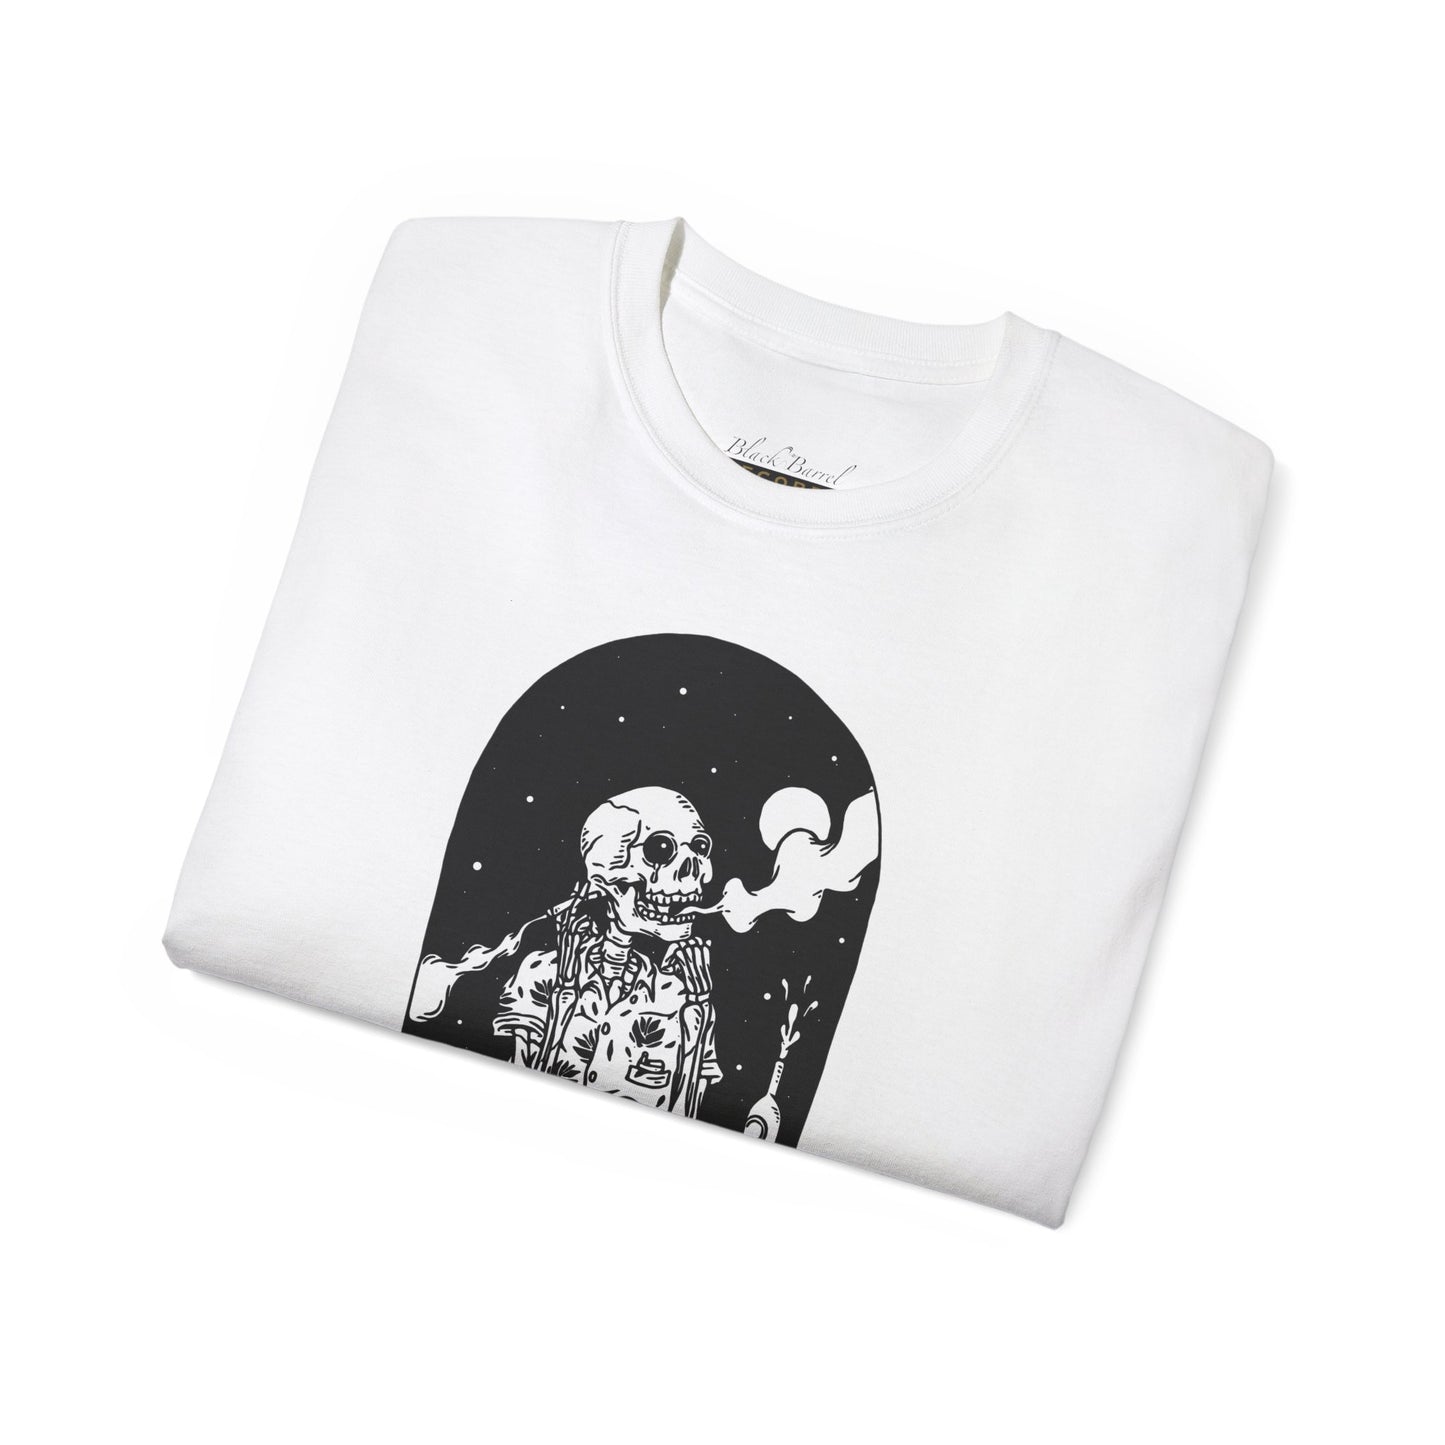 TIO Smoking Skeleton Shirt Black & White